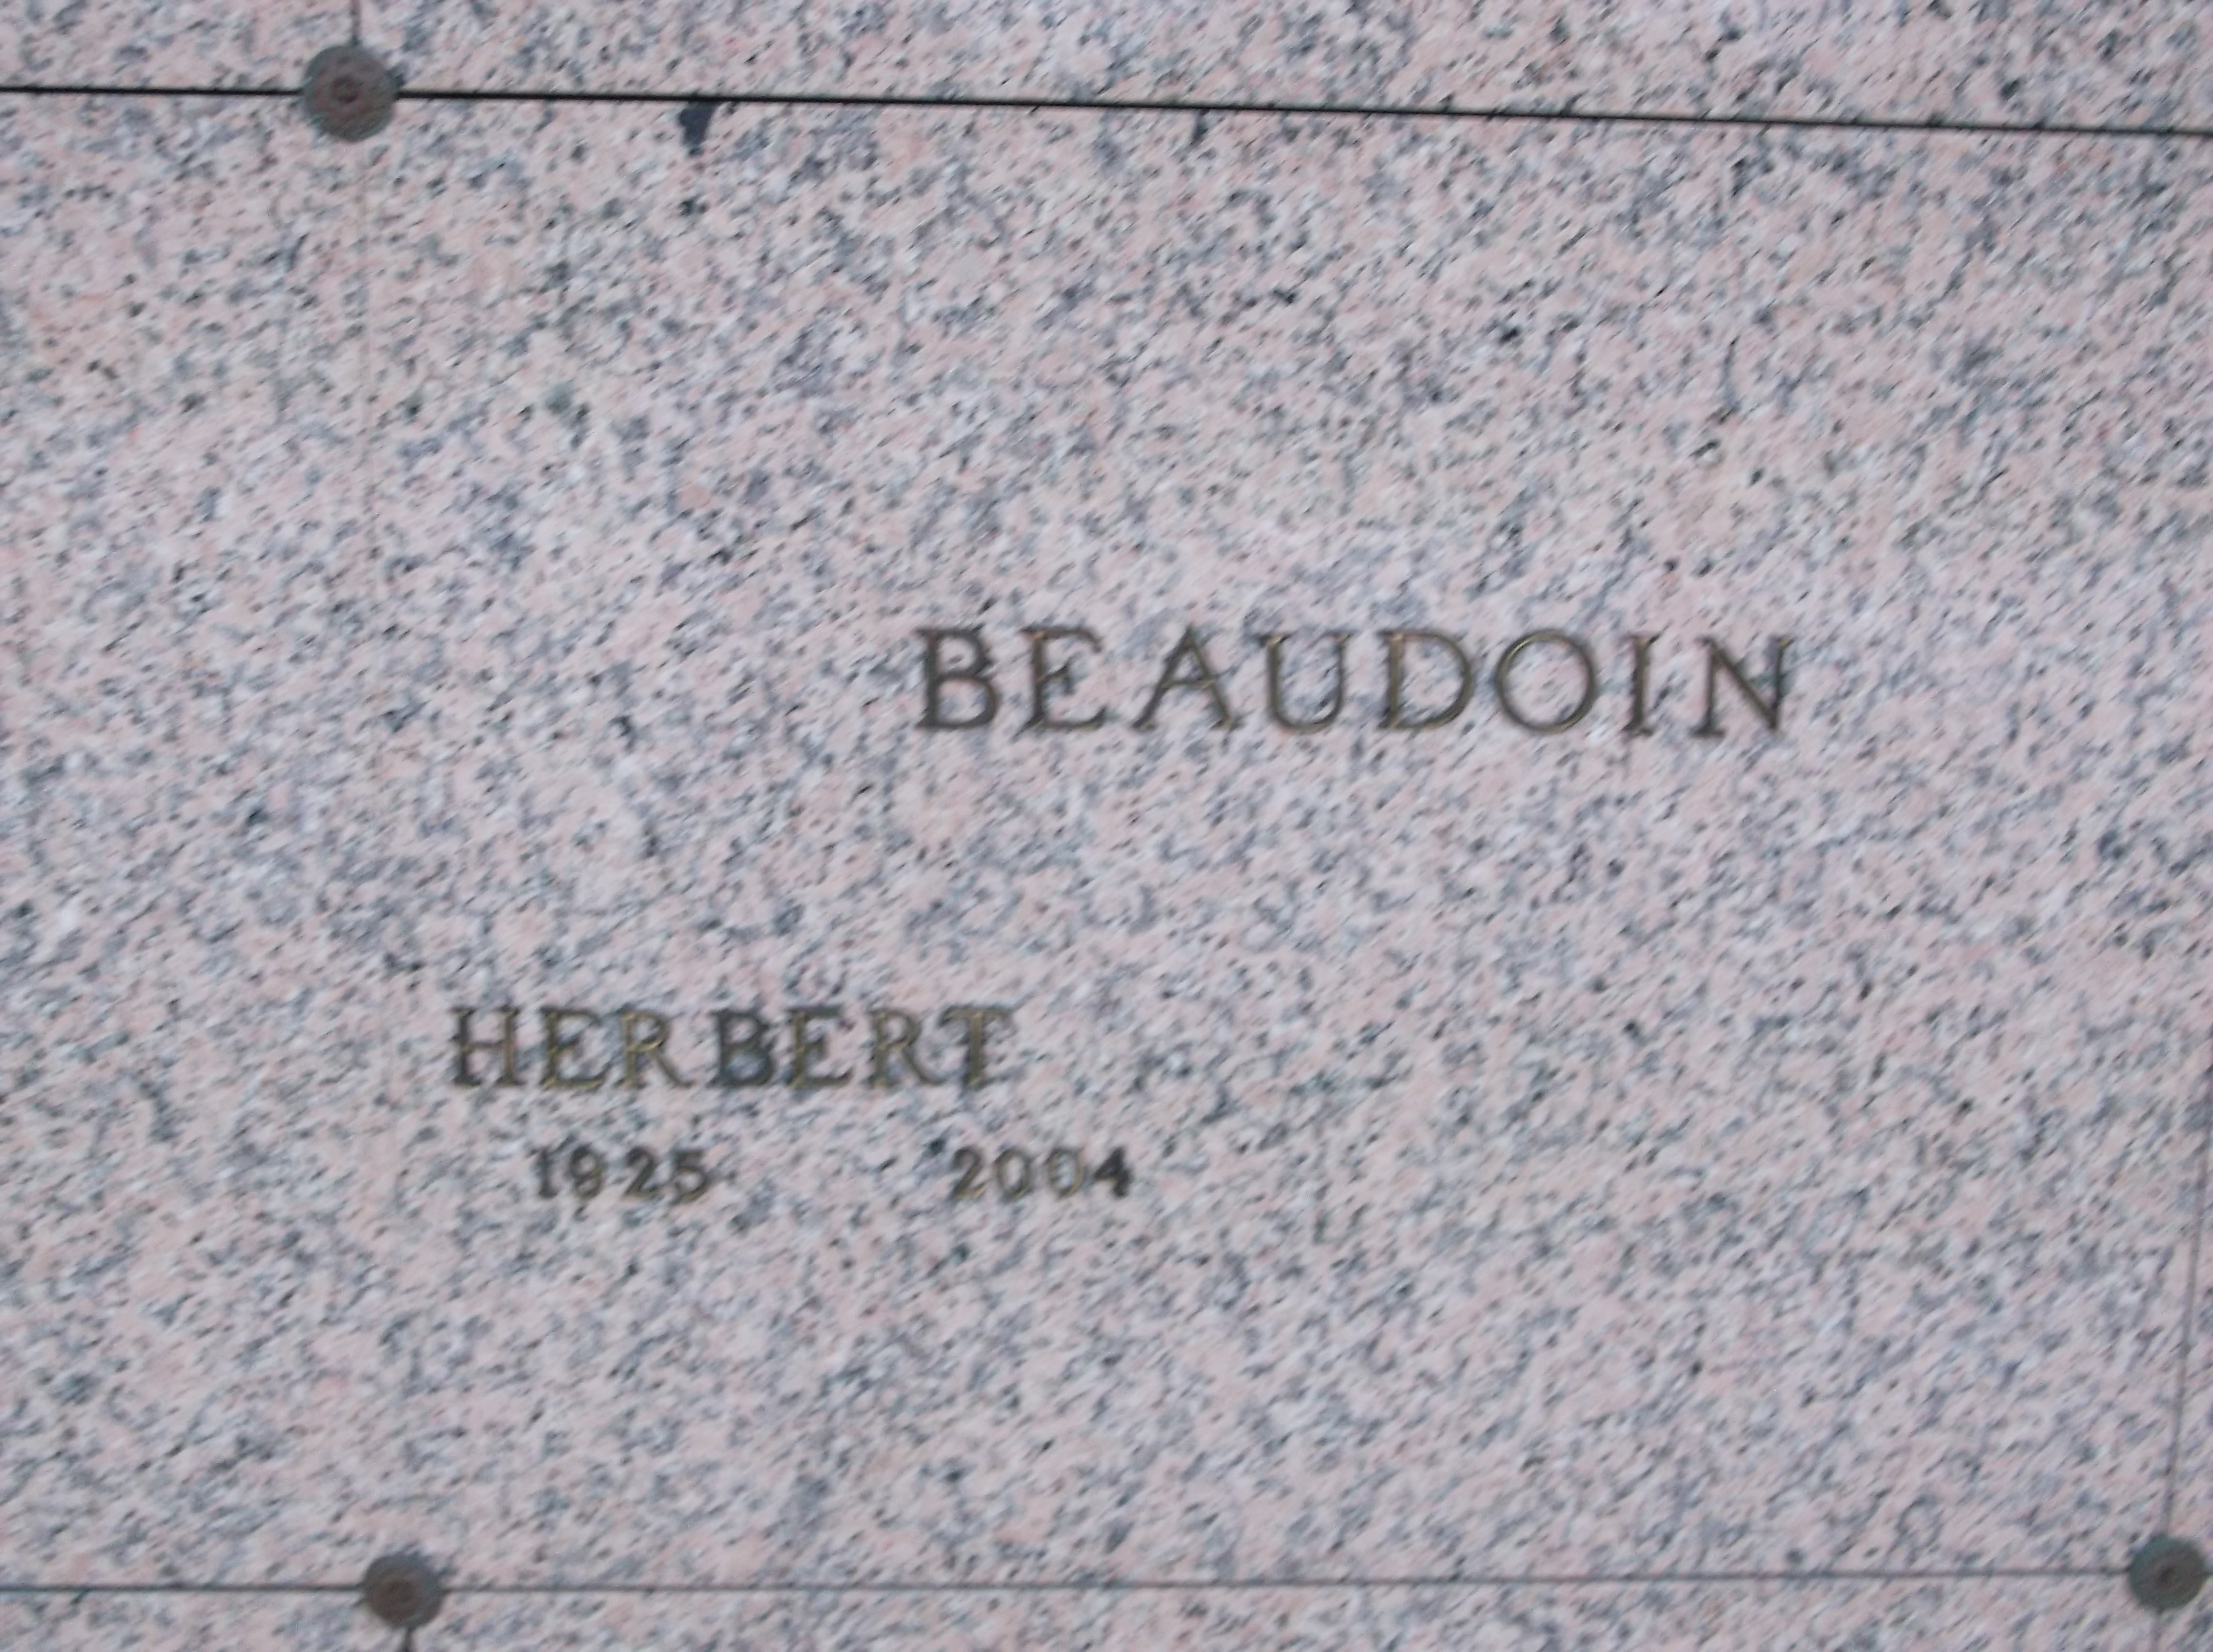 Herbert Beaudoin